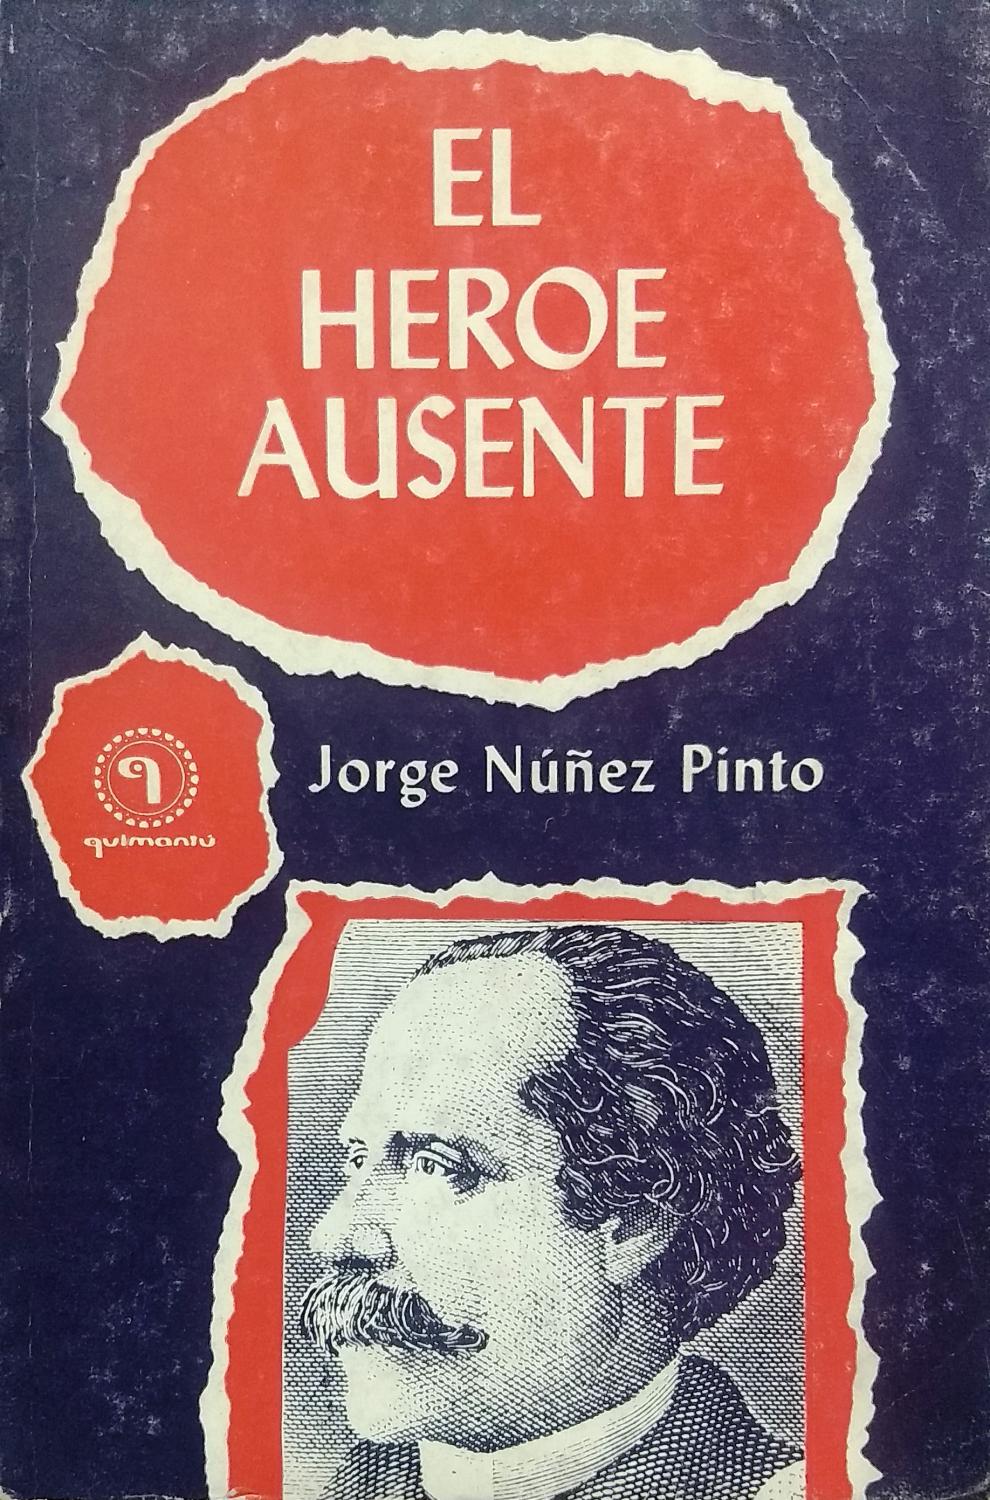 El héroe ausente - Jorge Núñez Pinto (Camino Abierto/QuimantEu) (image)